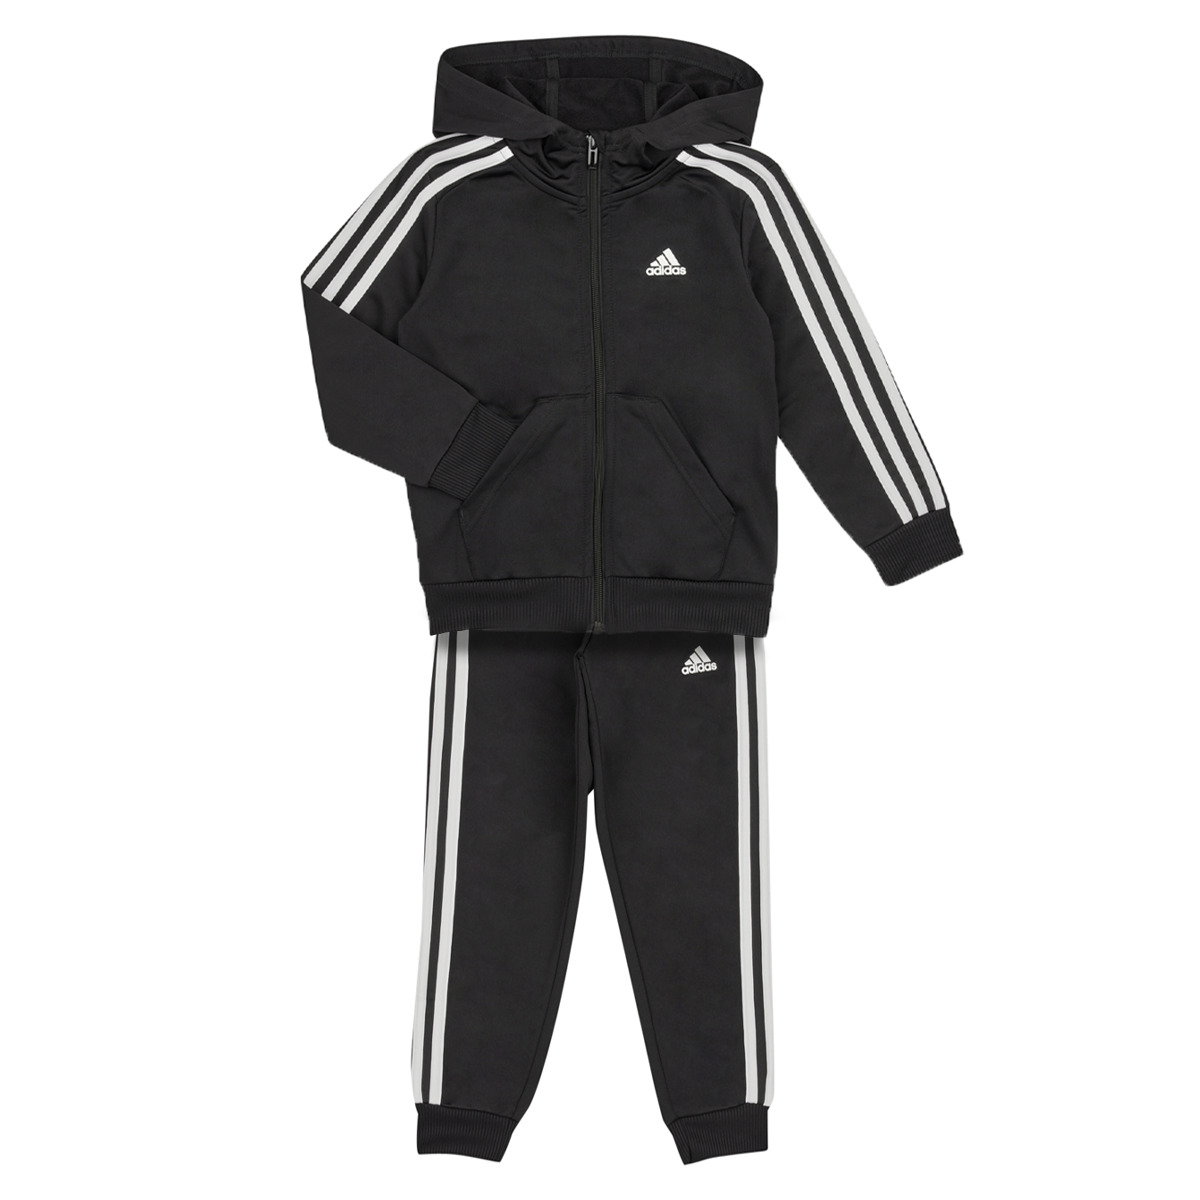 Adidas Sportswear Noir / Blanc LK 3S SHINY TS gb7coV2F